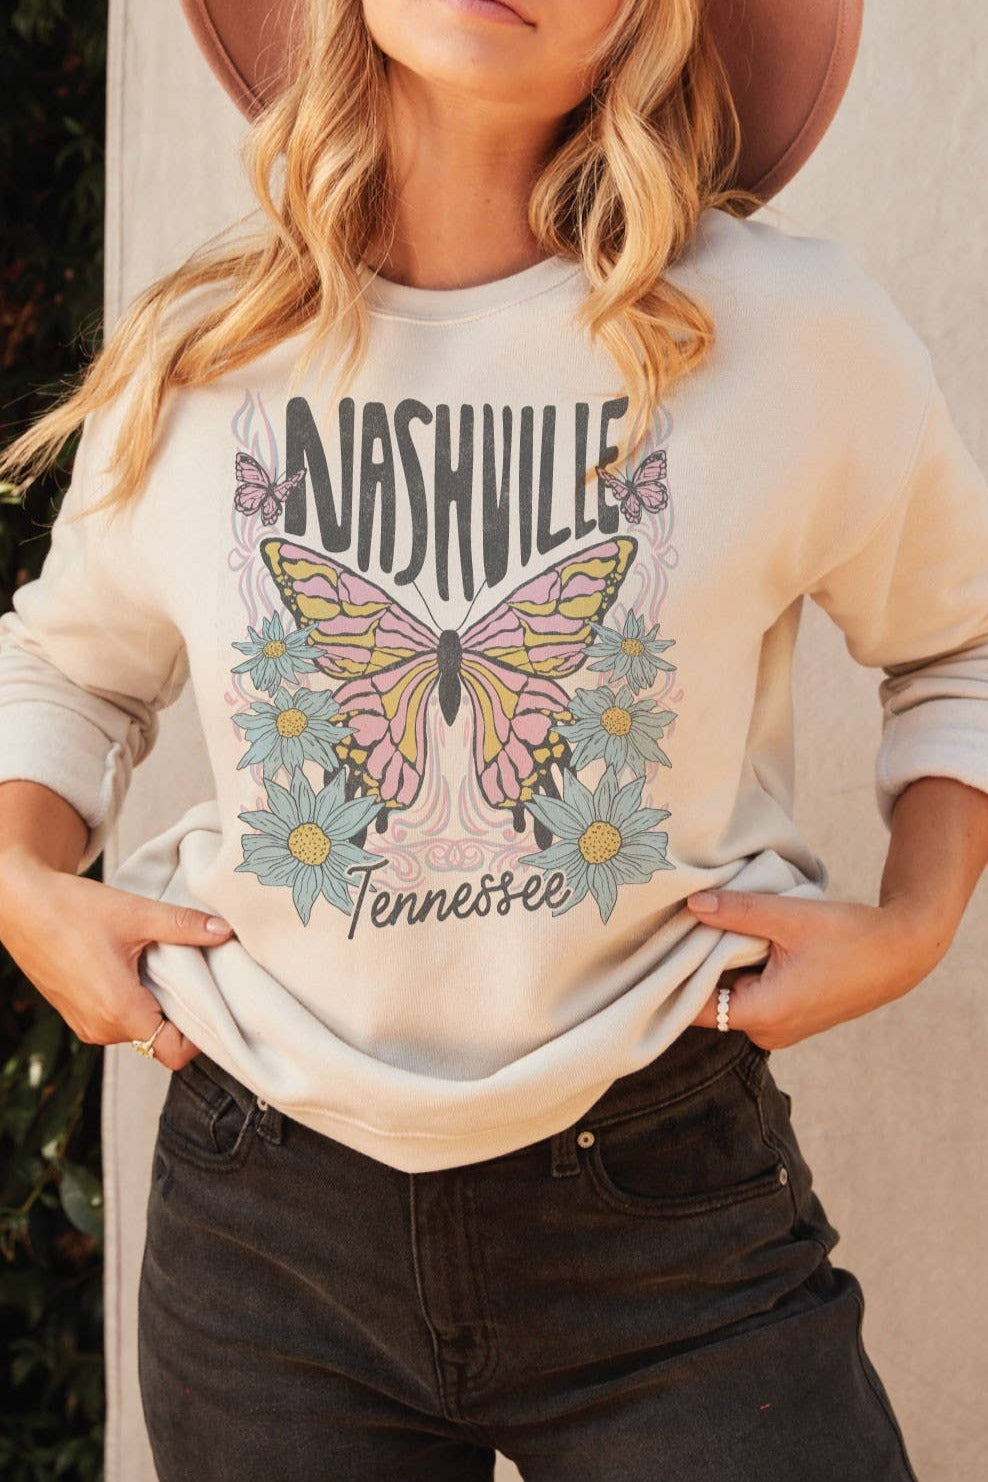 Nashville Tennessee Graphic Sweatshirt